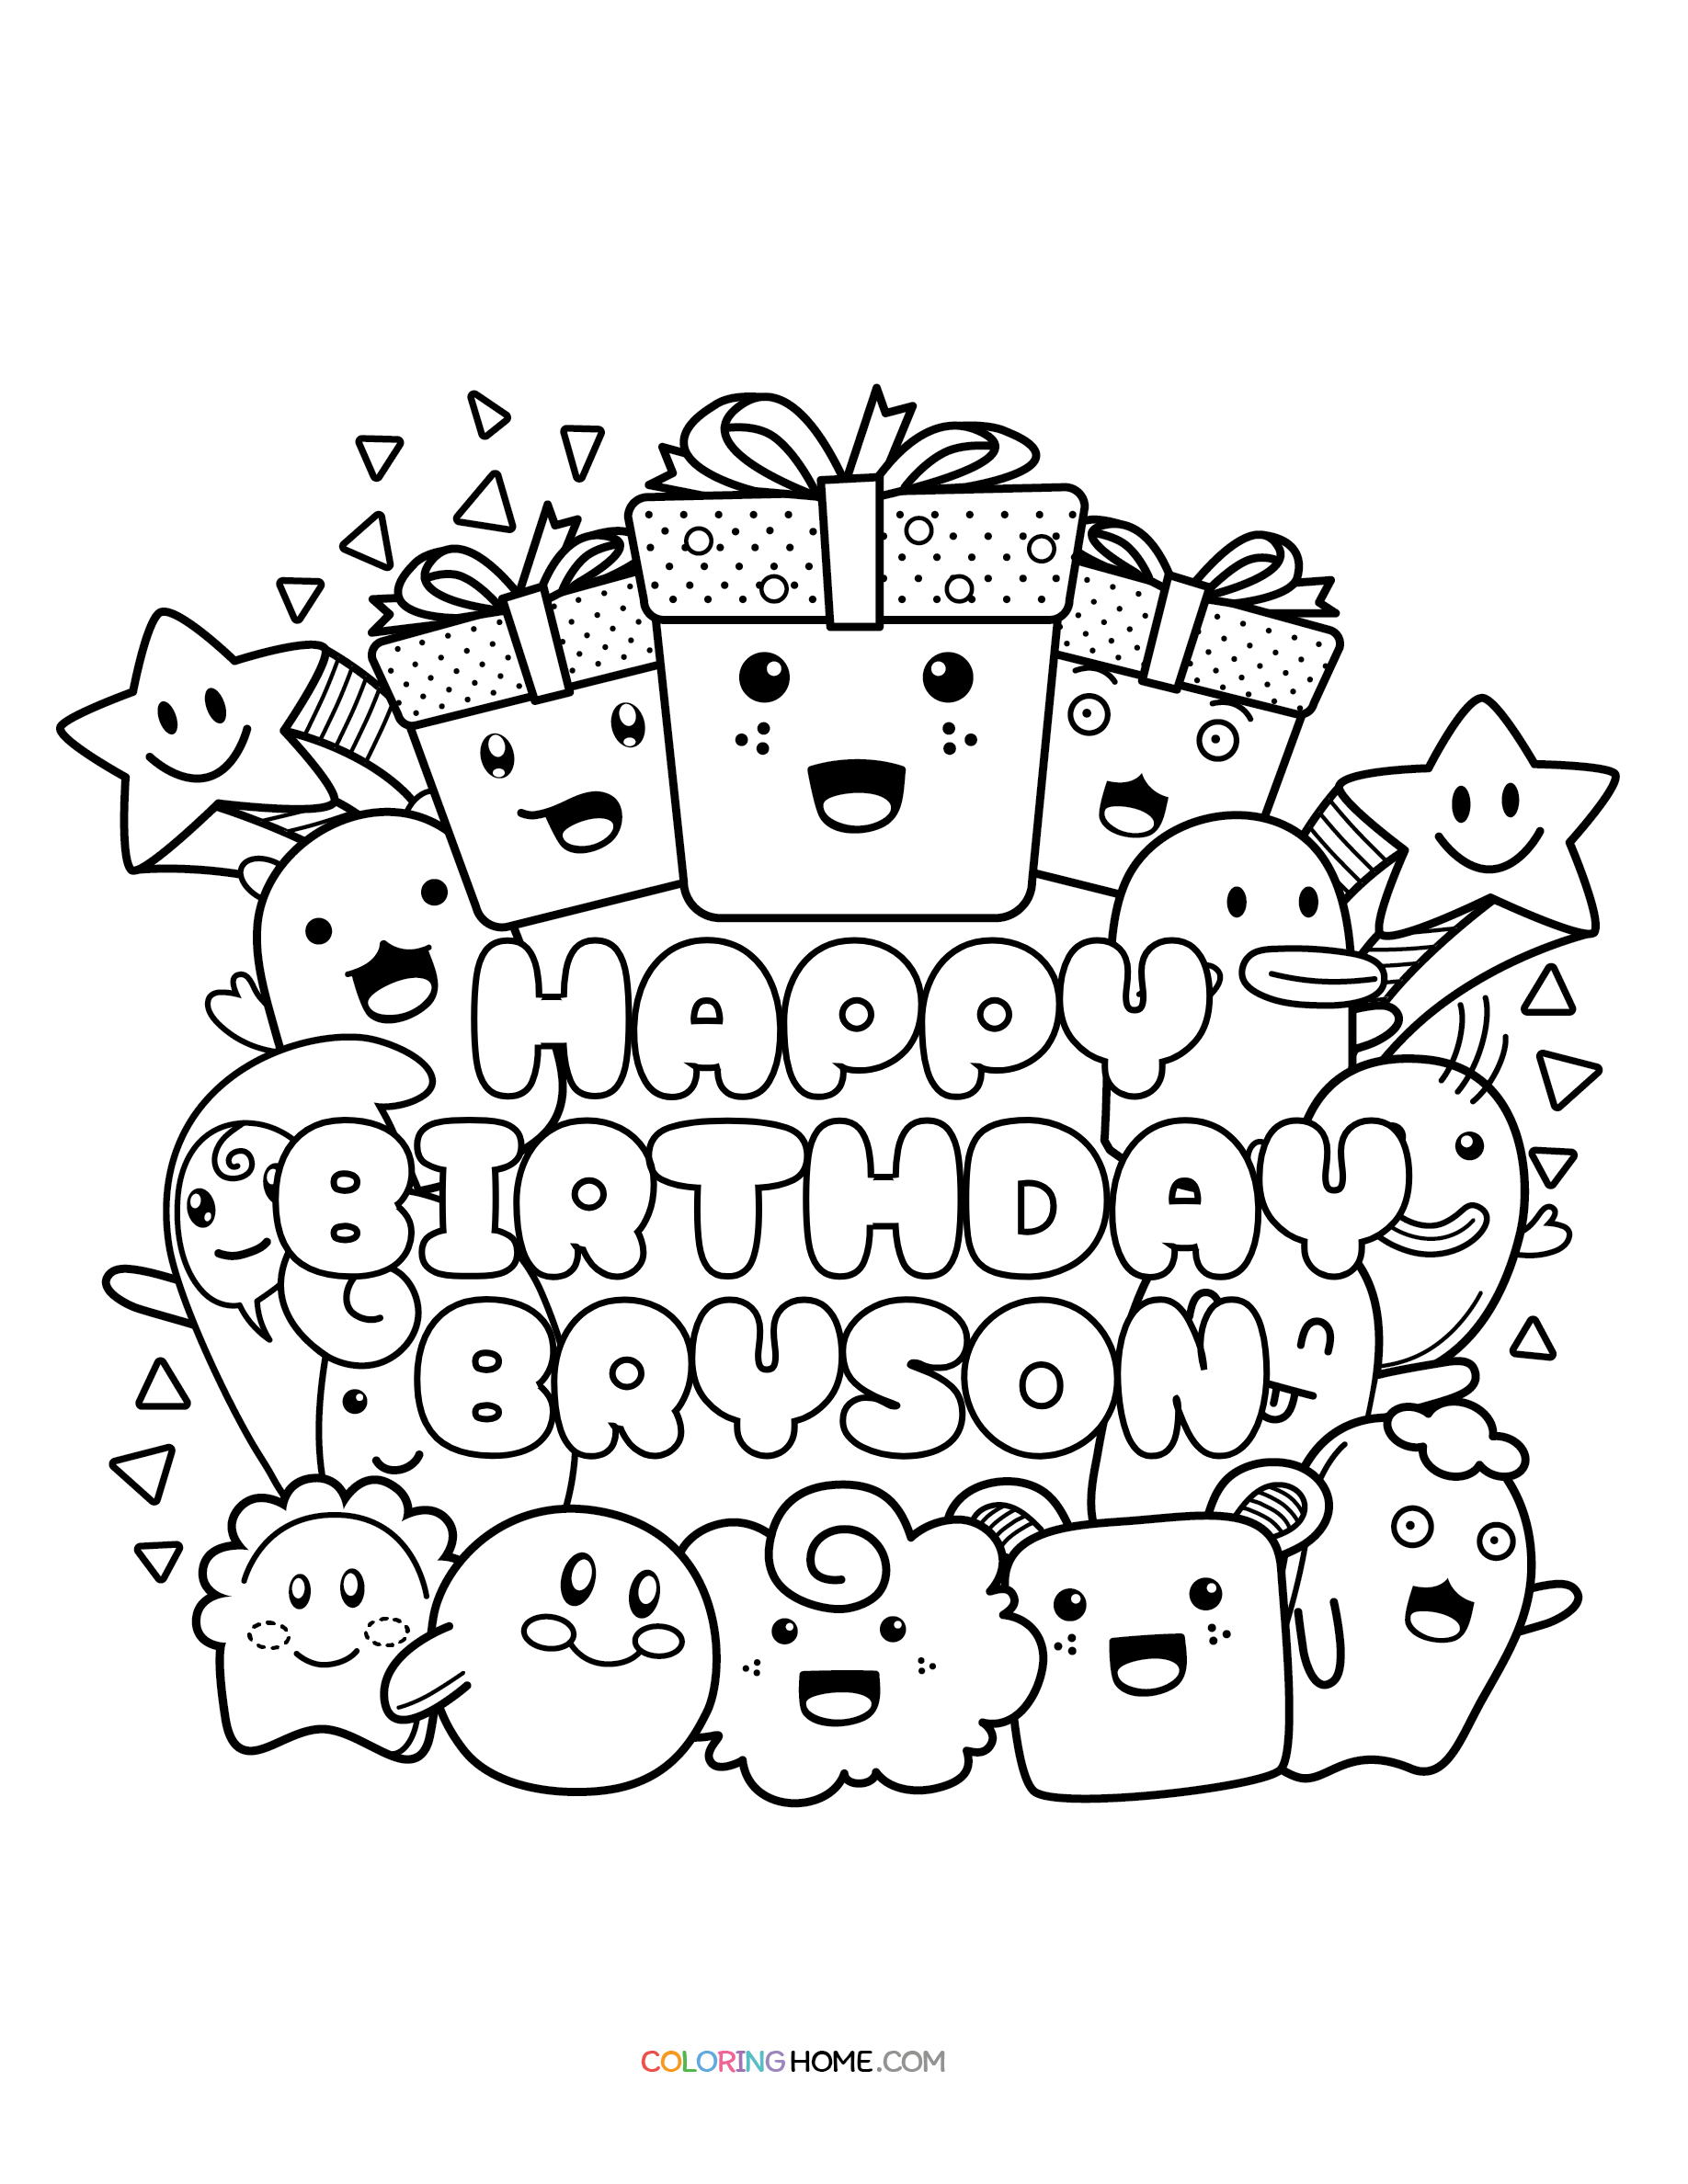 Happy Birthday Bryson coloring page